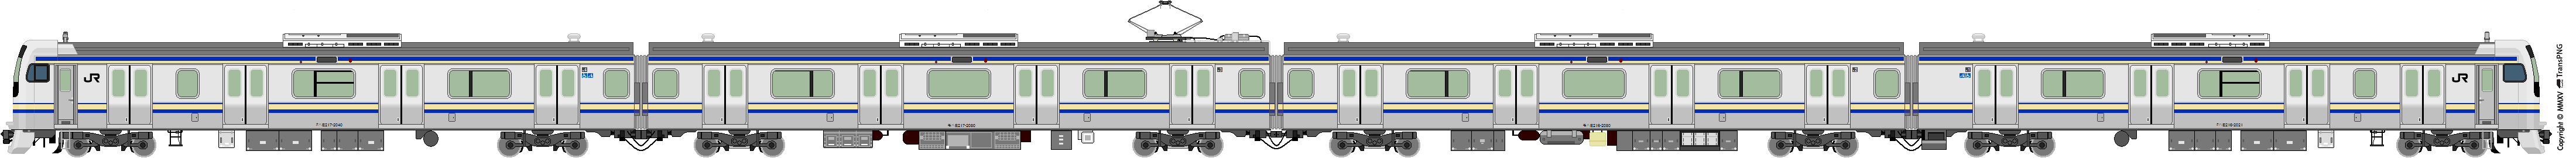 5019 - [5019] East Japan Railway 52162606976_50fe76f6a0_o